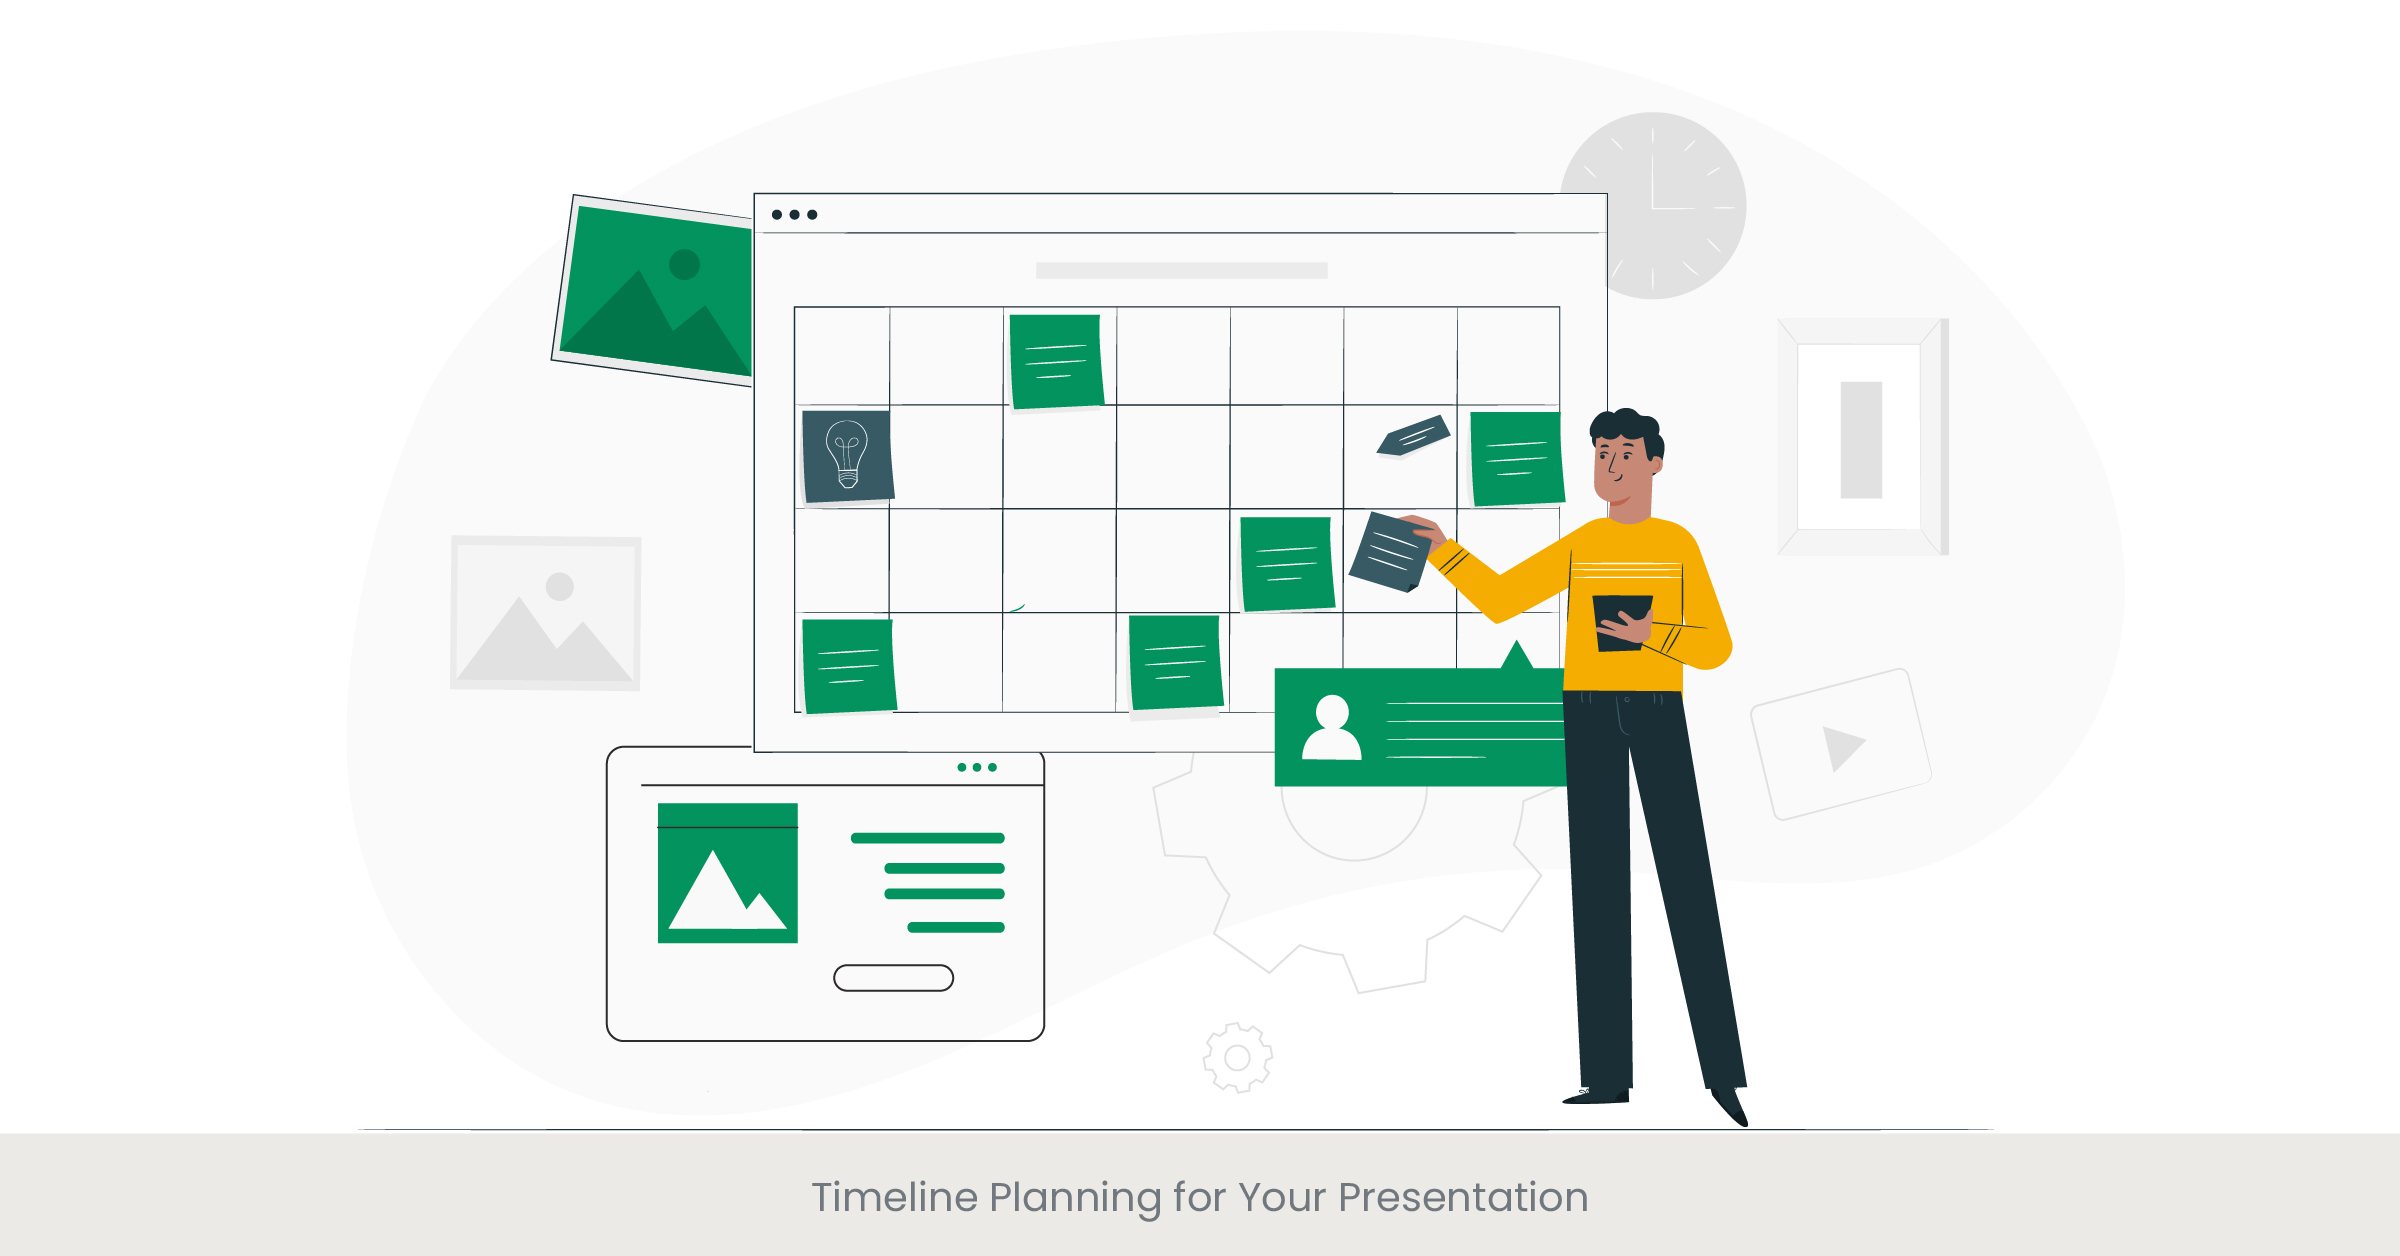 Timeline Planning for Your Presentation